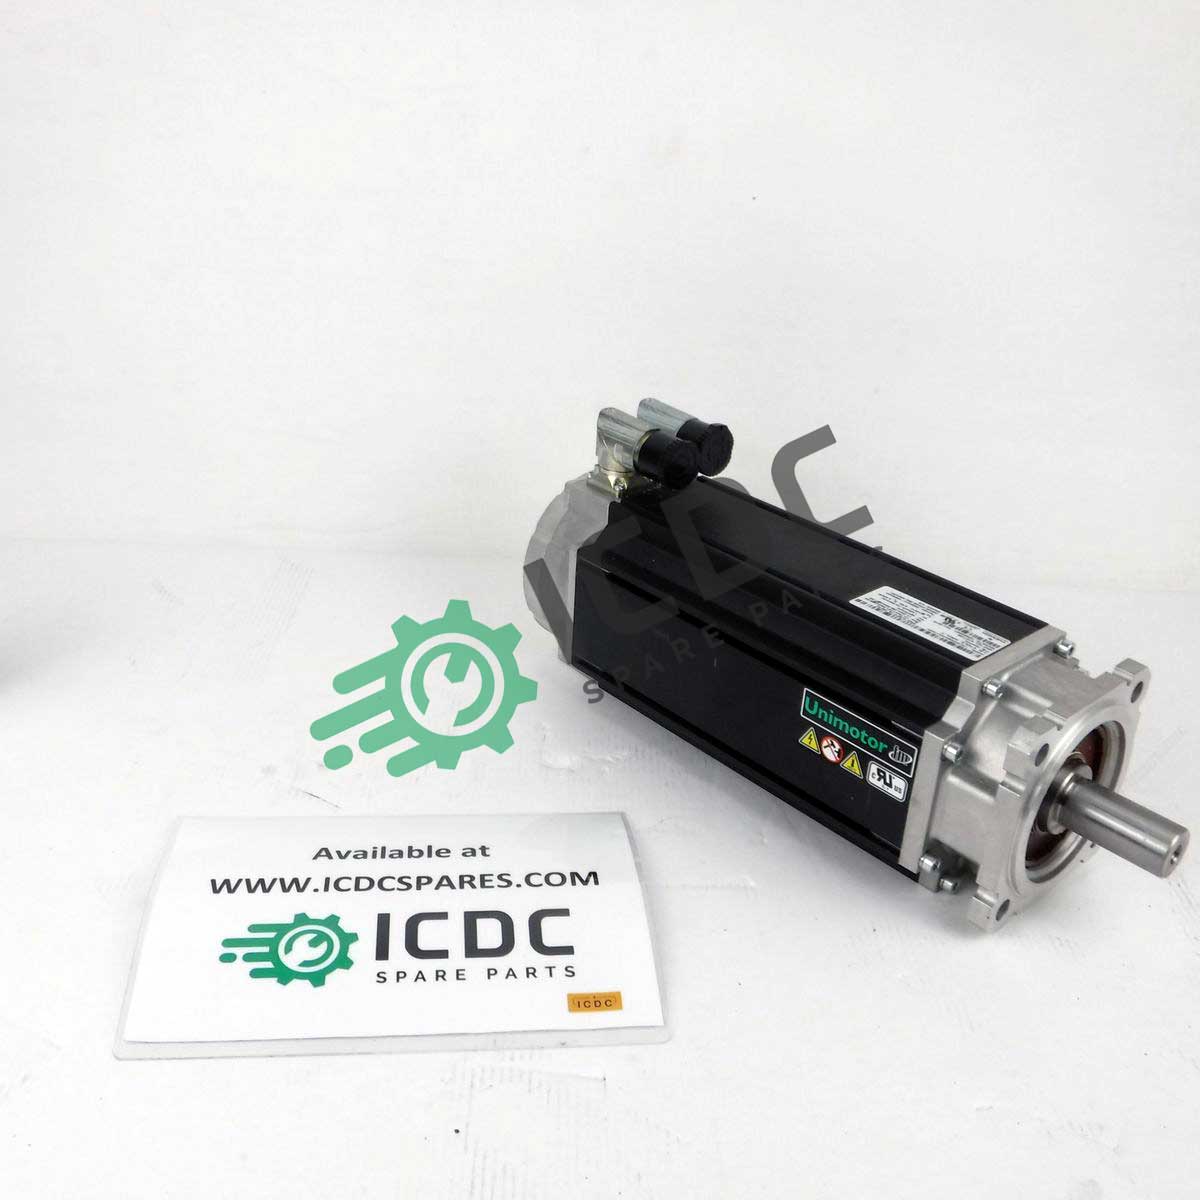 CONTROL TECH115U2D300BAA Motor Call ICDC for Tech Specs!